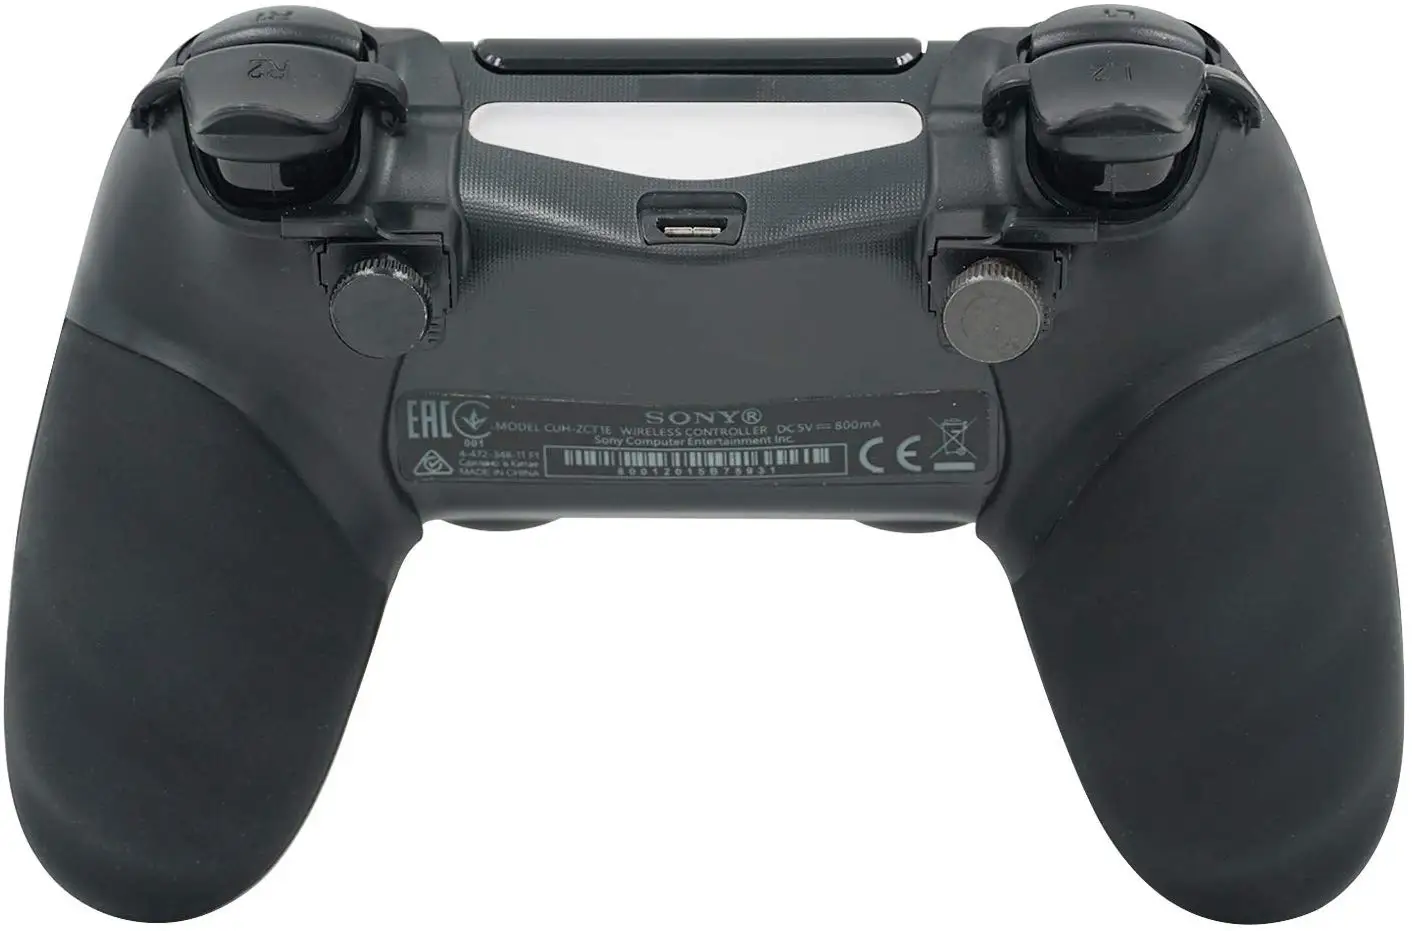 FPS расширители Trigger Stop Handle Grip для контроллера PS4 поднятый джойстик с кнопками крышка крышки для контроллера playstation 4